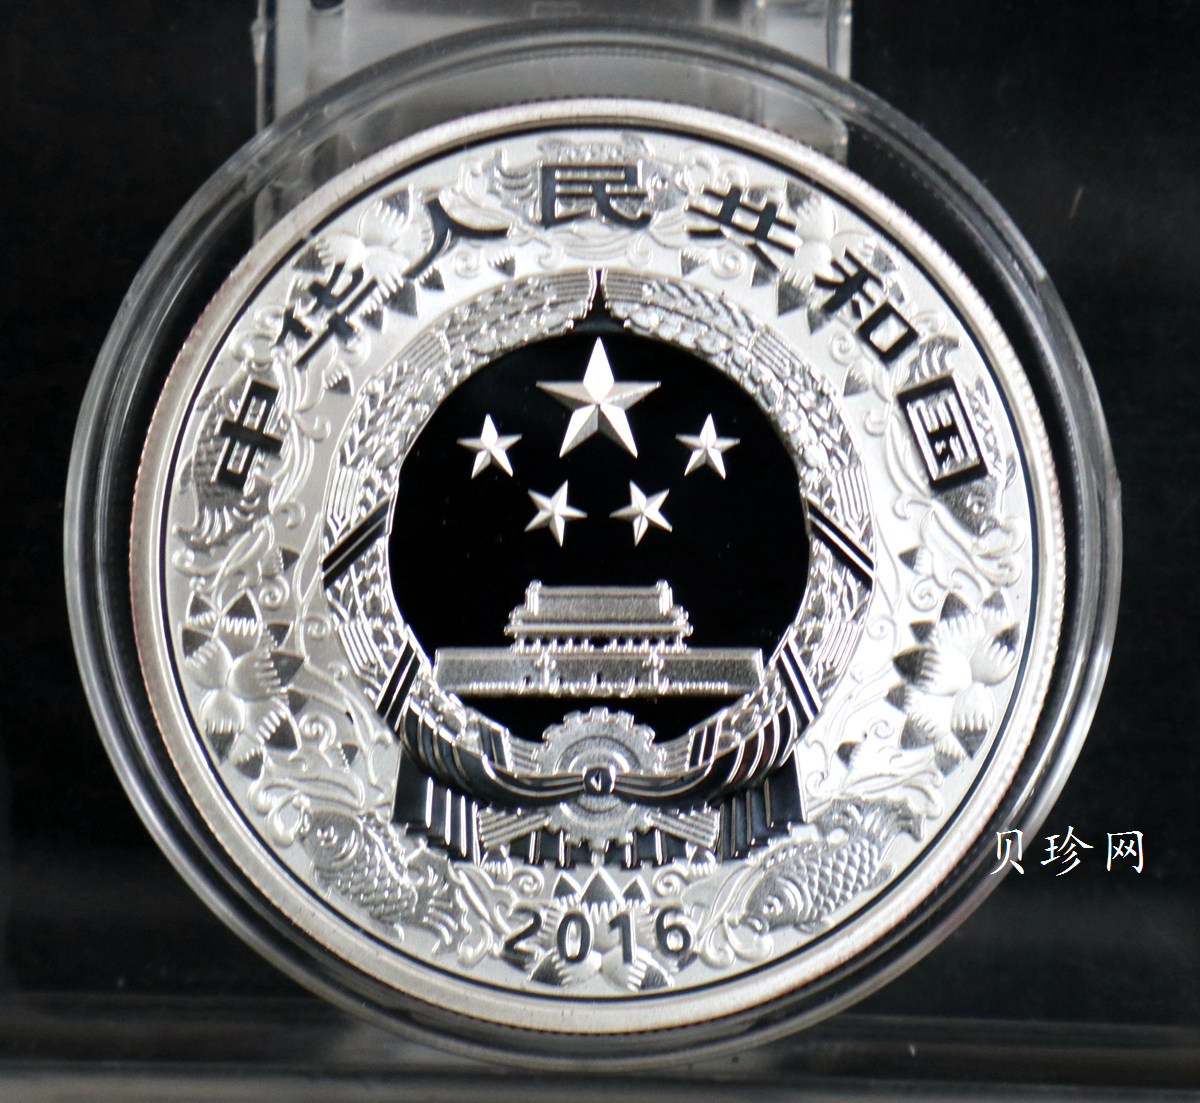 【151402】2016年丙申猴年生肖1盎司精制银币